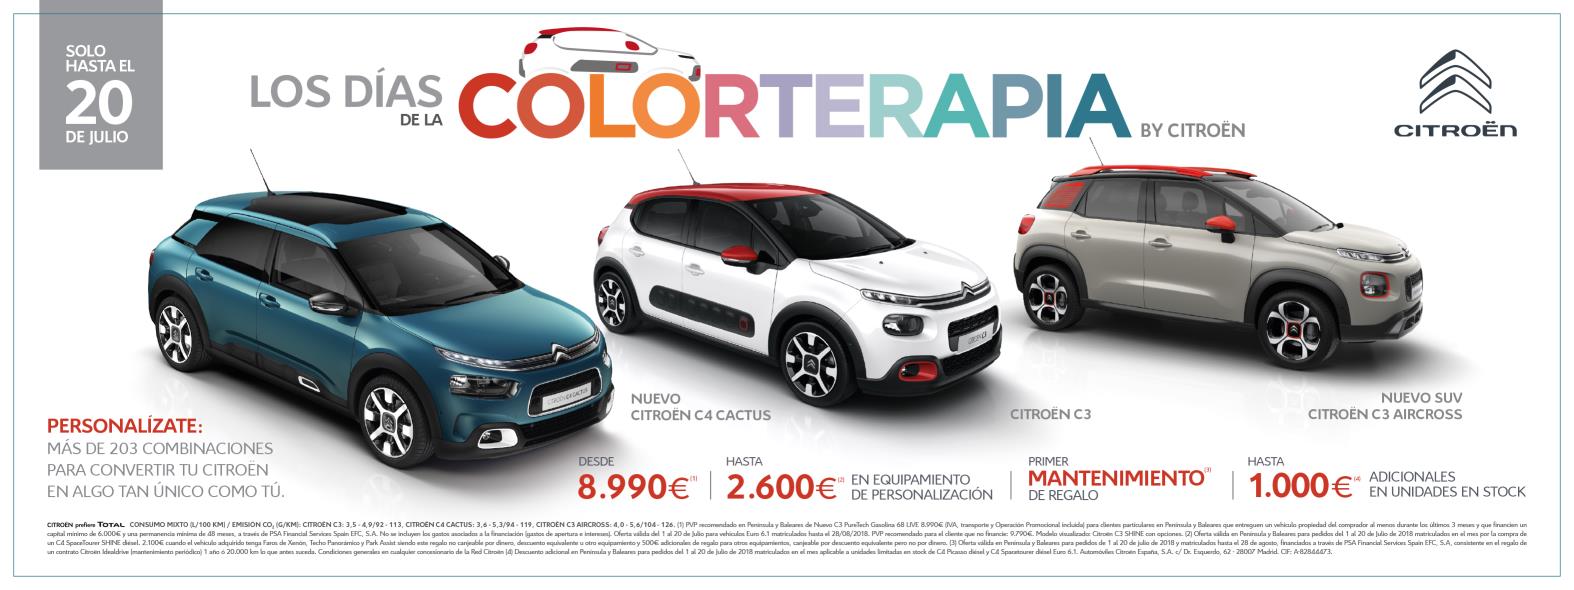 Colorterapia By Citroën